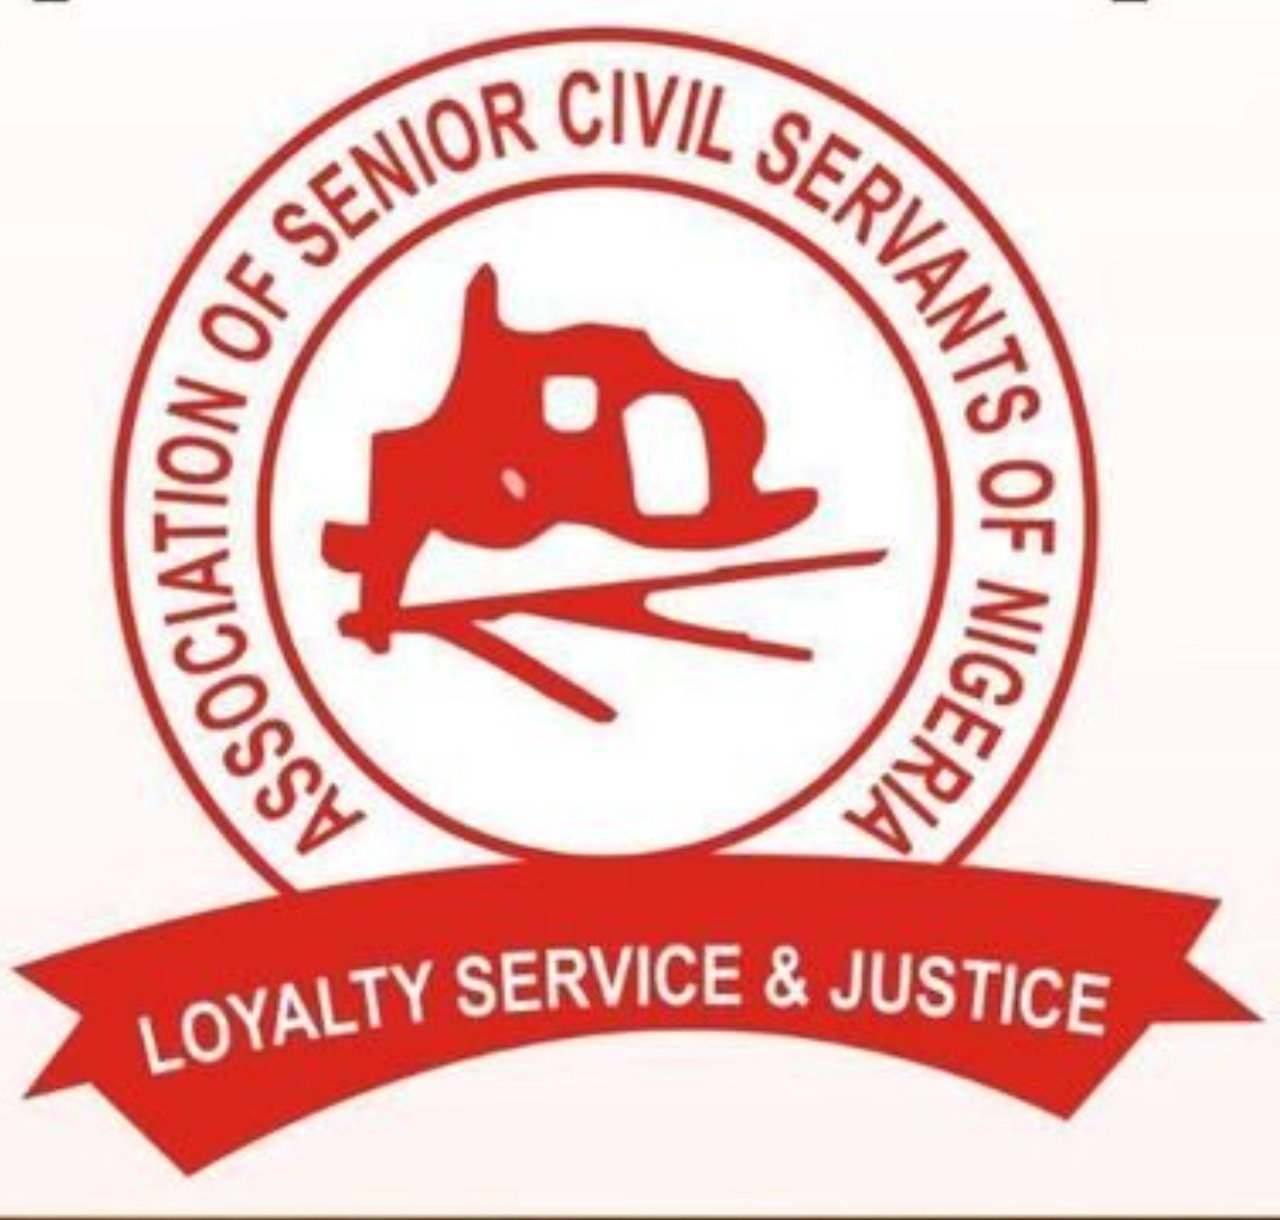 Senior civil servants crisis: Group petitions IGP